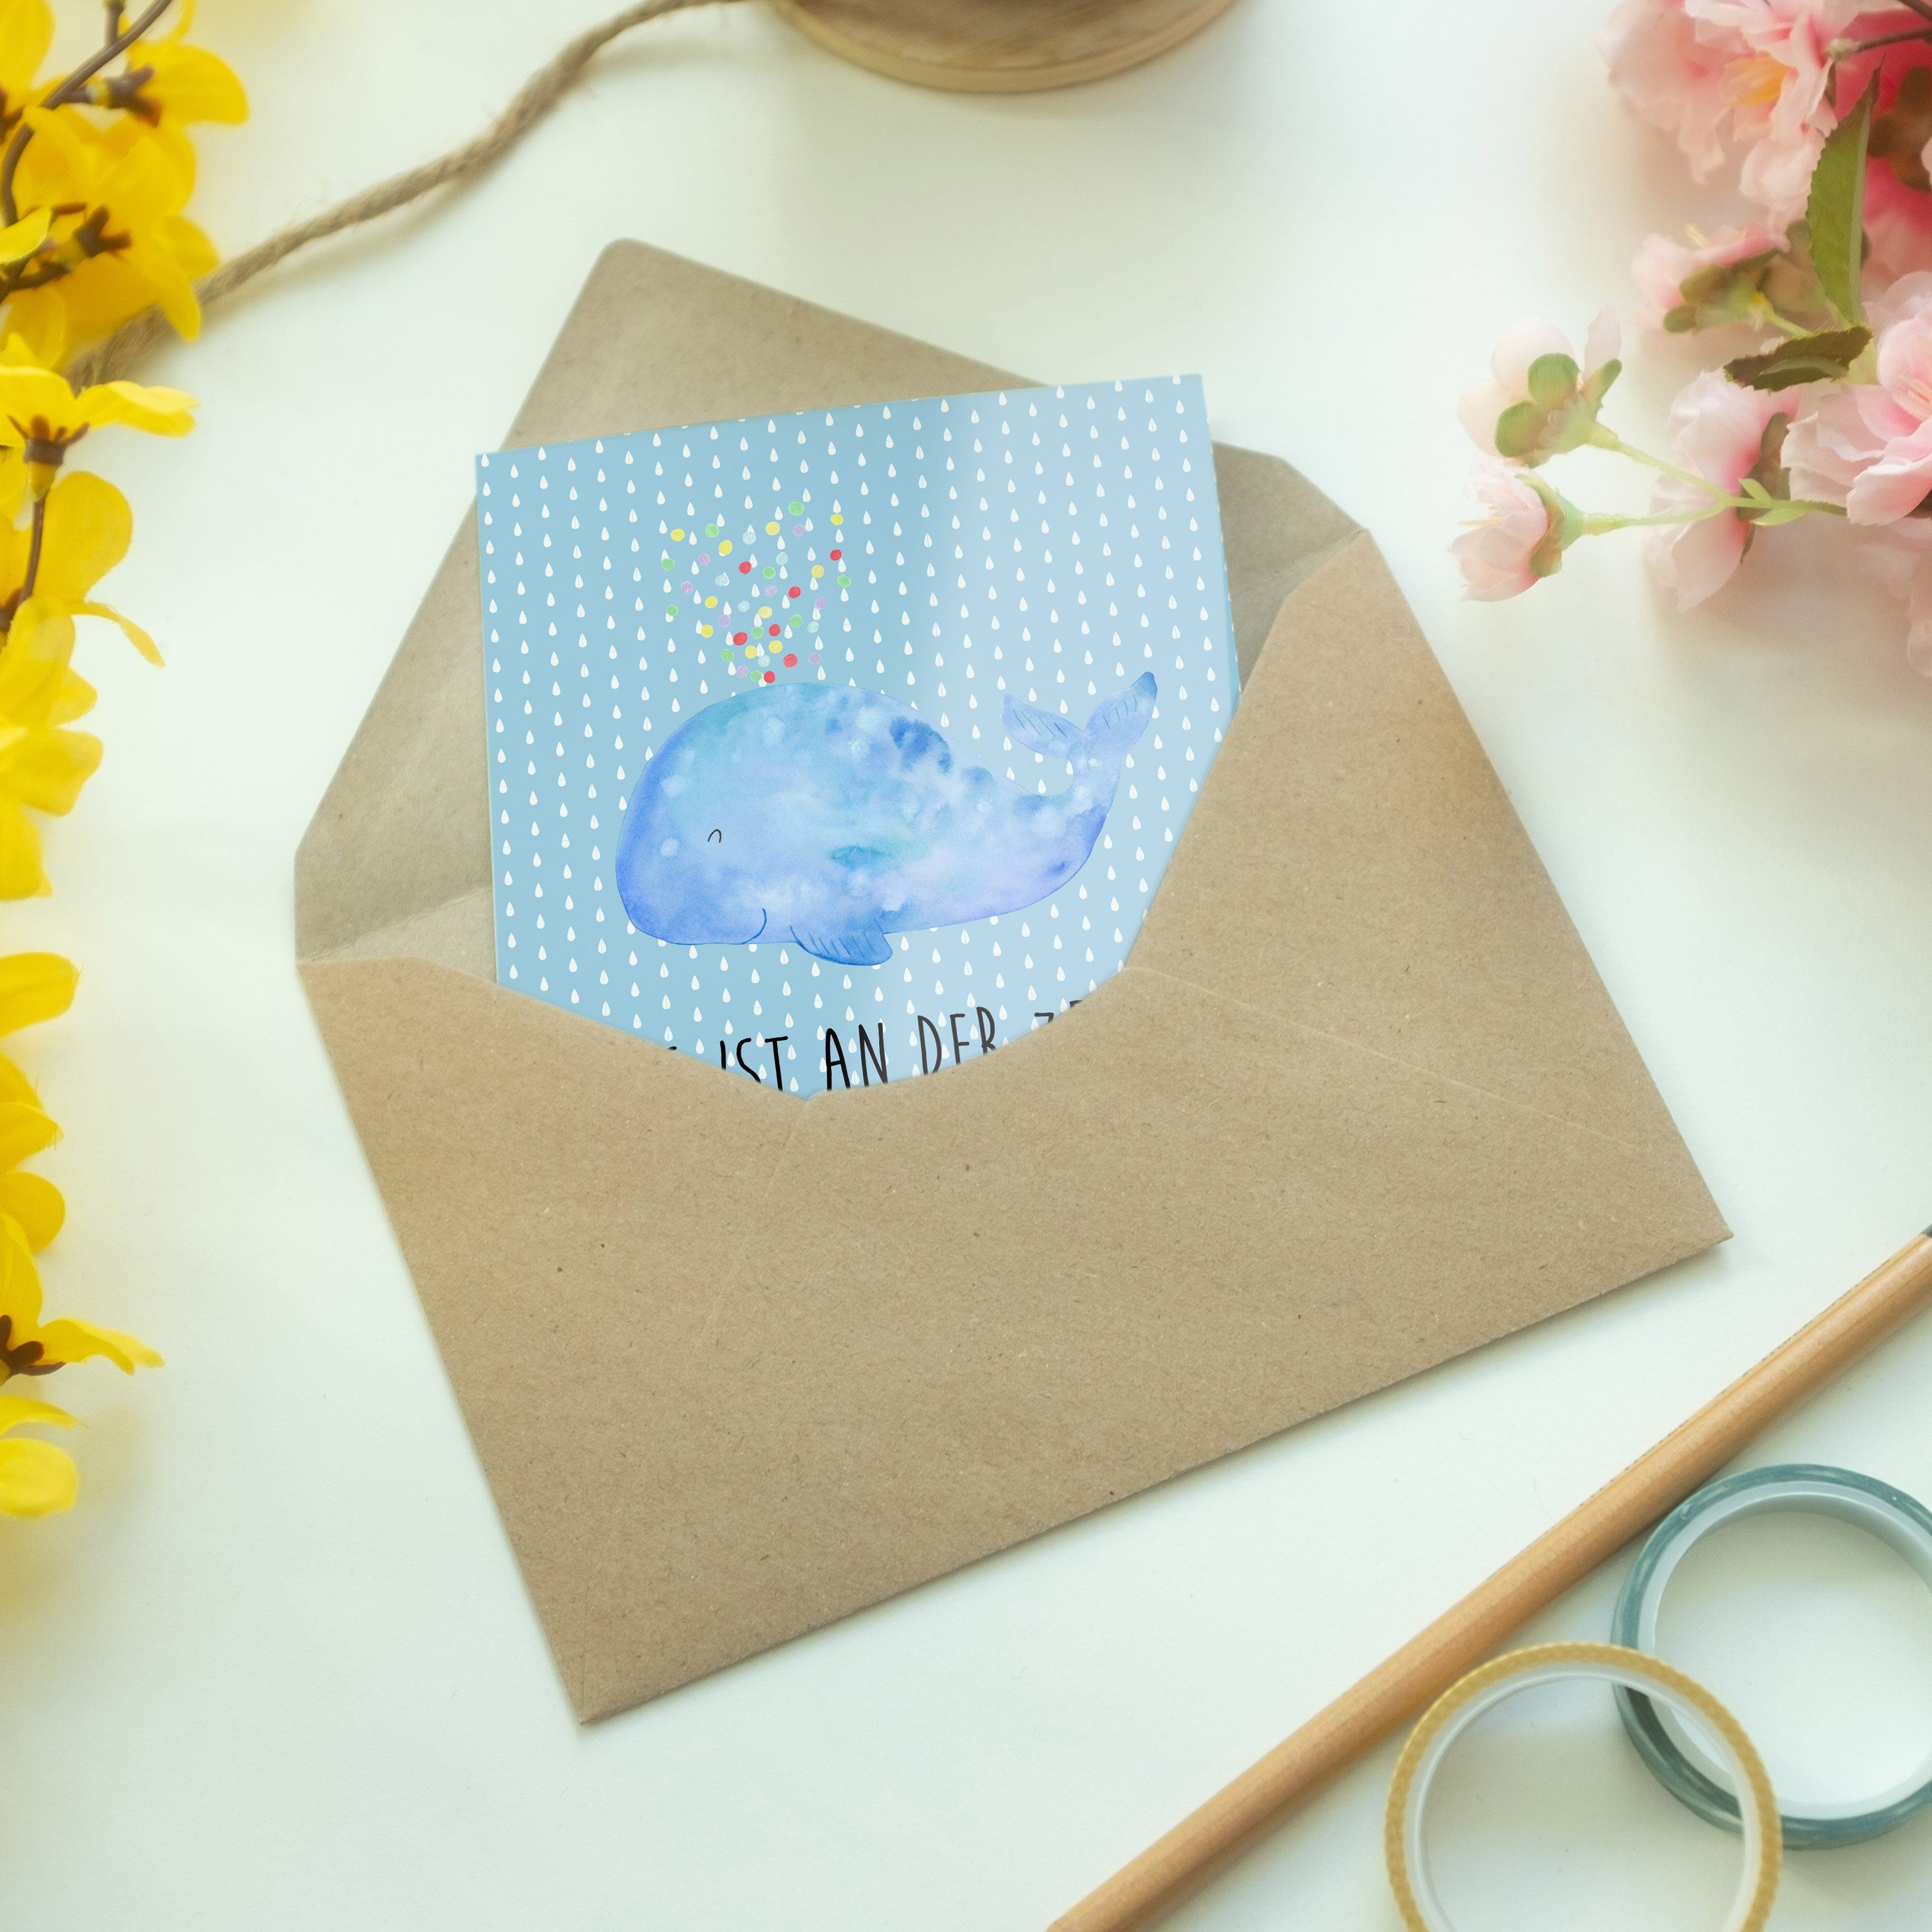 - Mr. Konfetti Geschenk, Panda & Mrs. Grußkarte Meer Einladungskarte, - Urlaub, Wal Blau Pastell